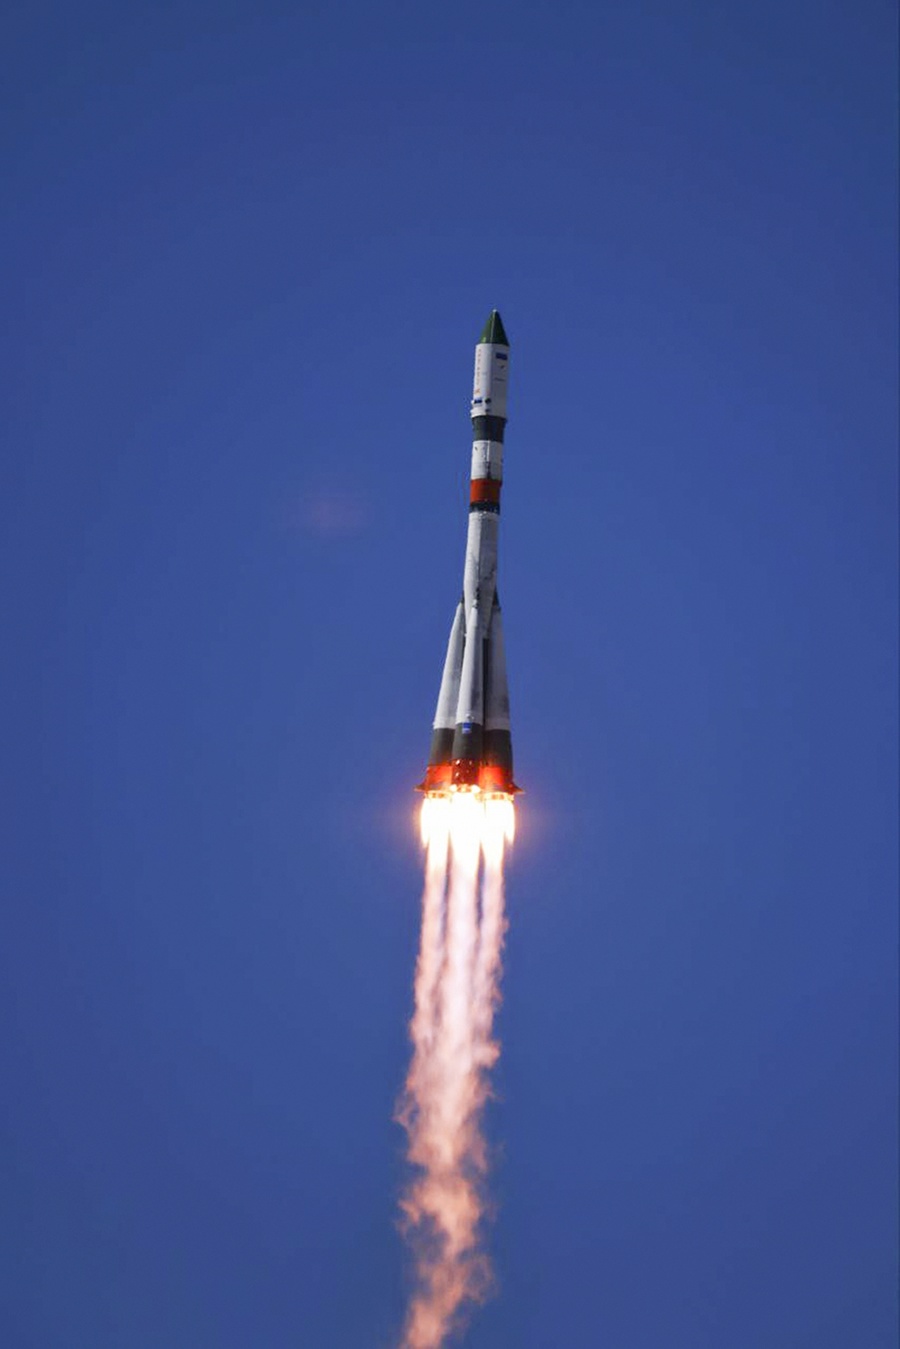 Bezposádkovú loď vyniesla do vesmíru nosná raketa Sojuz-2.